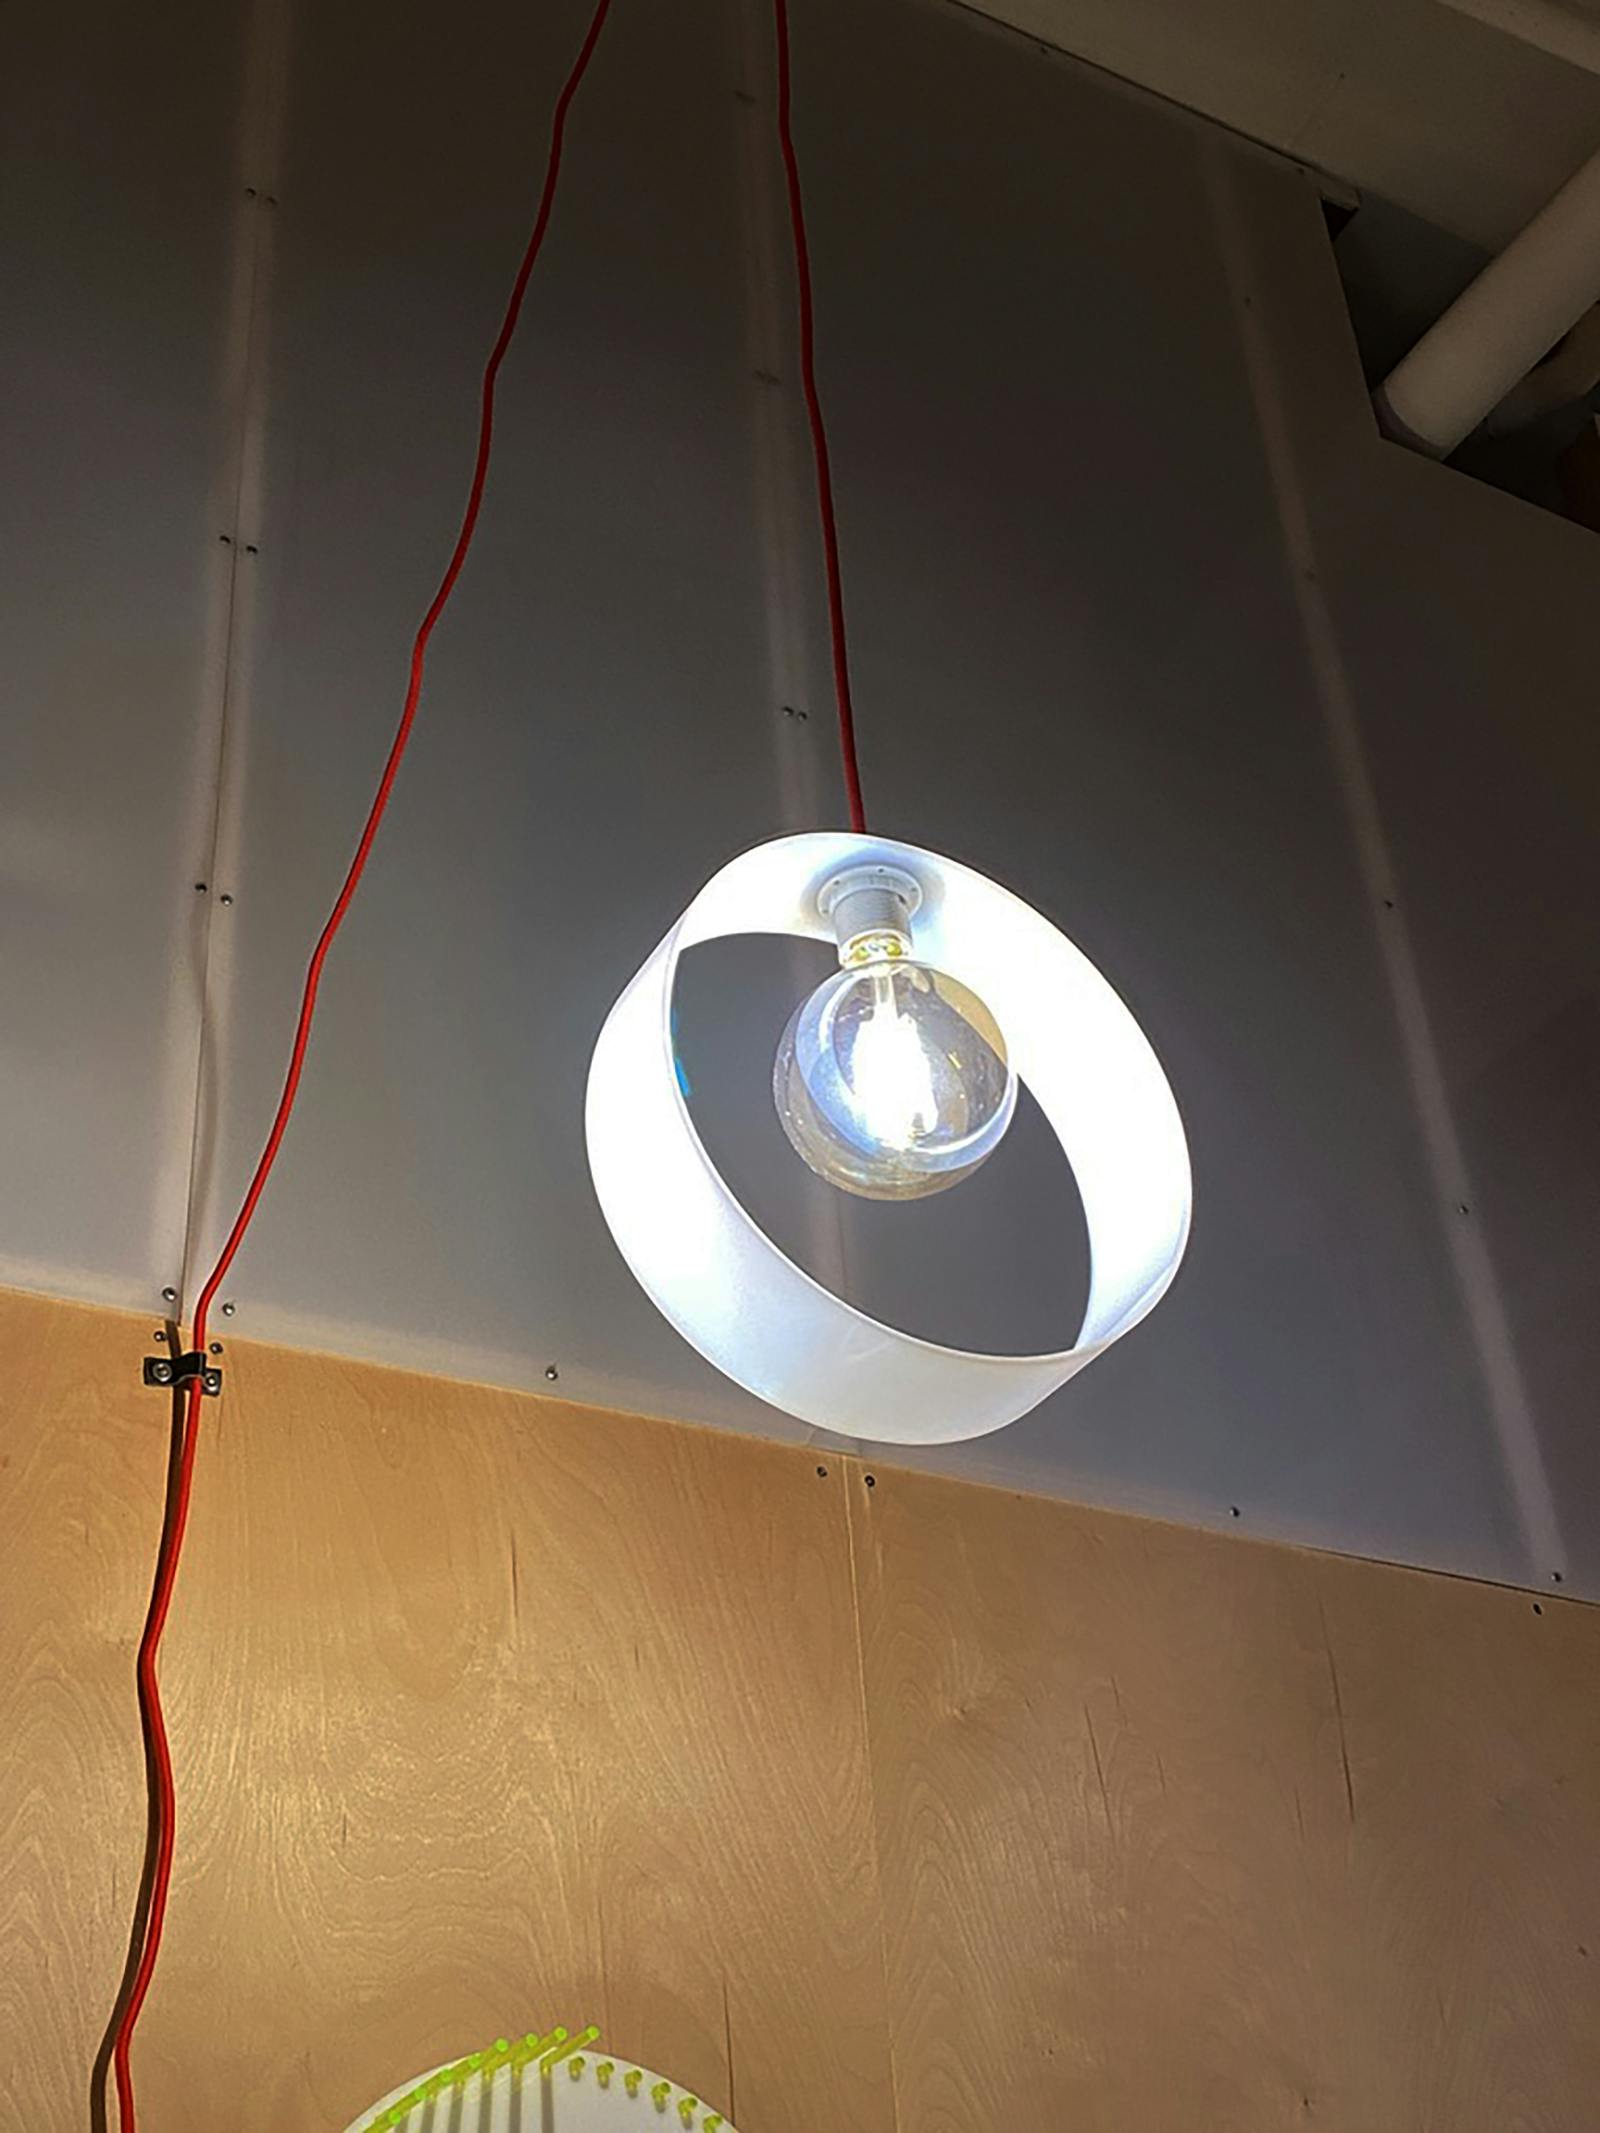 A circular light fixture